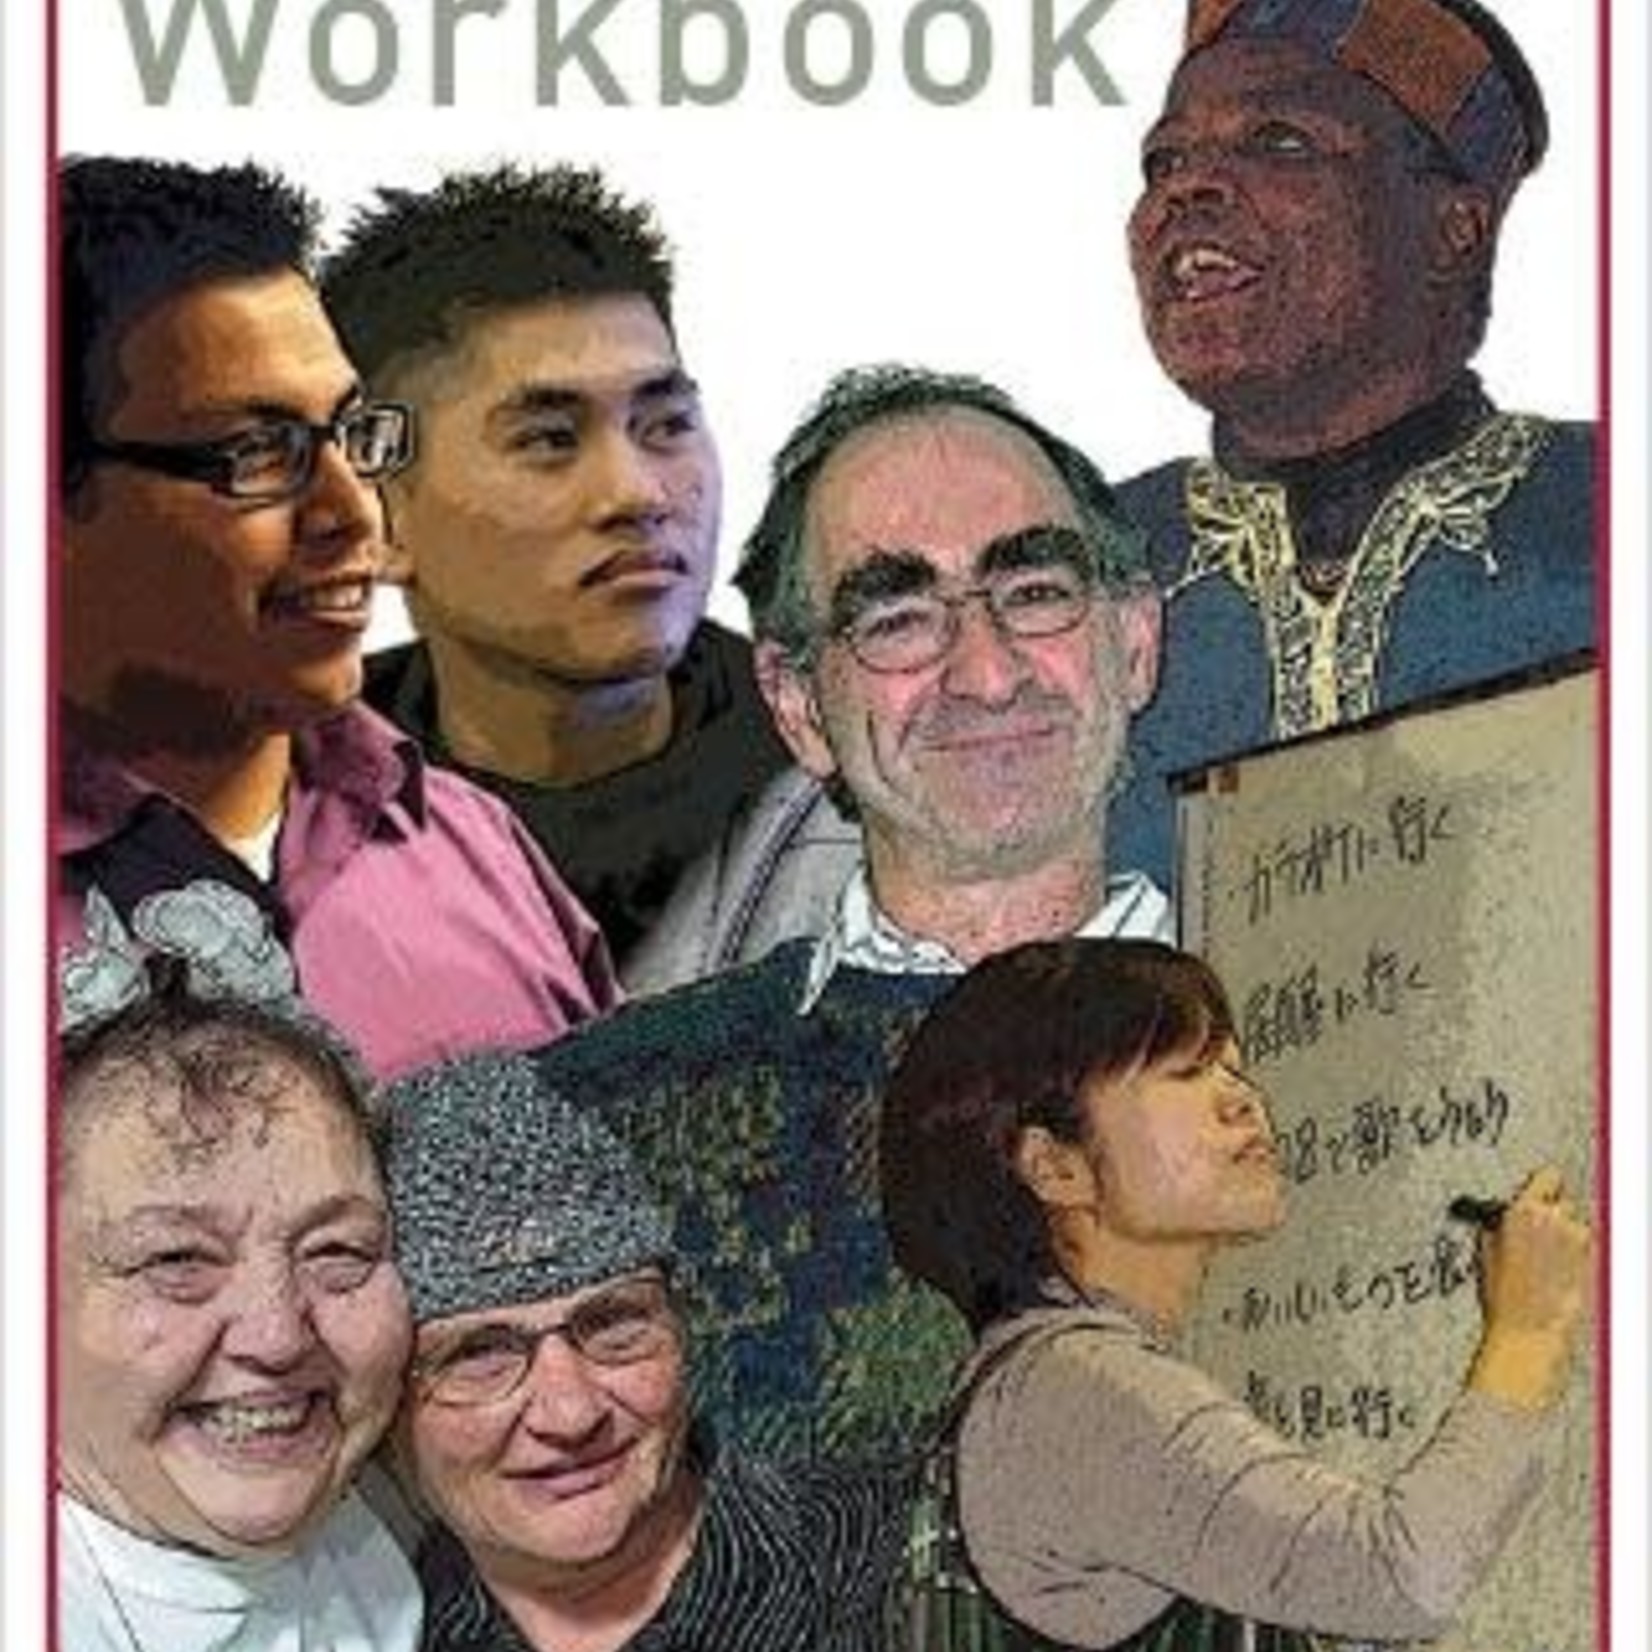 WRAP [Workbook]